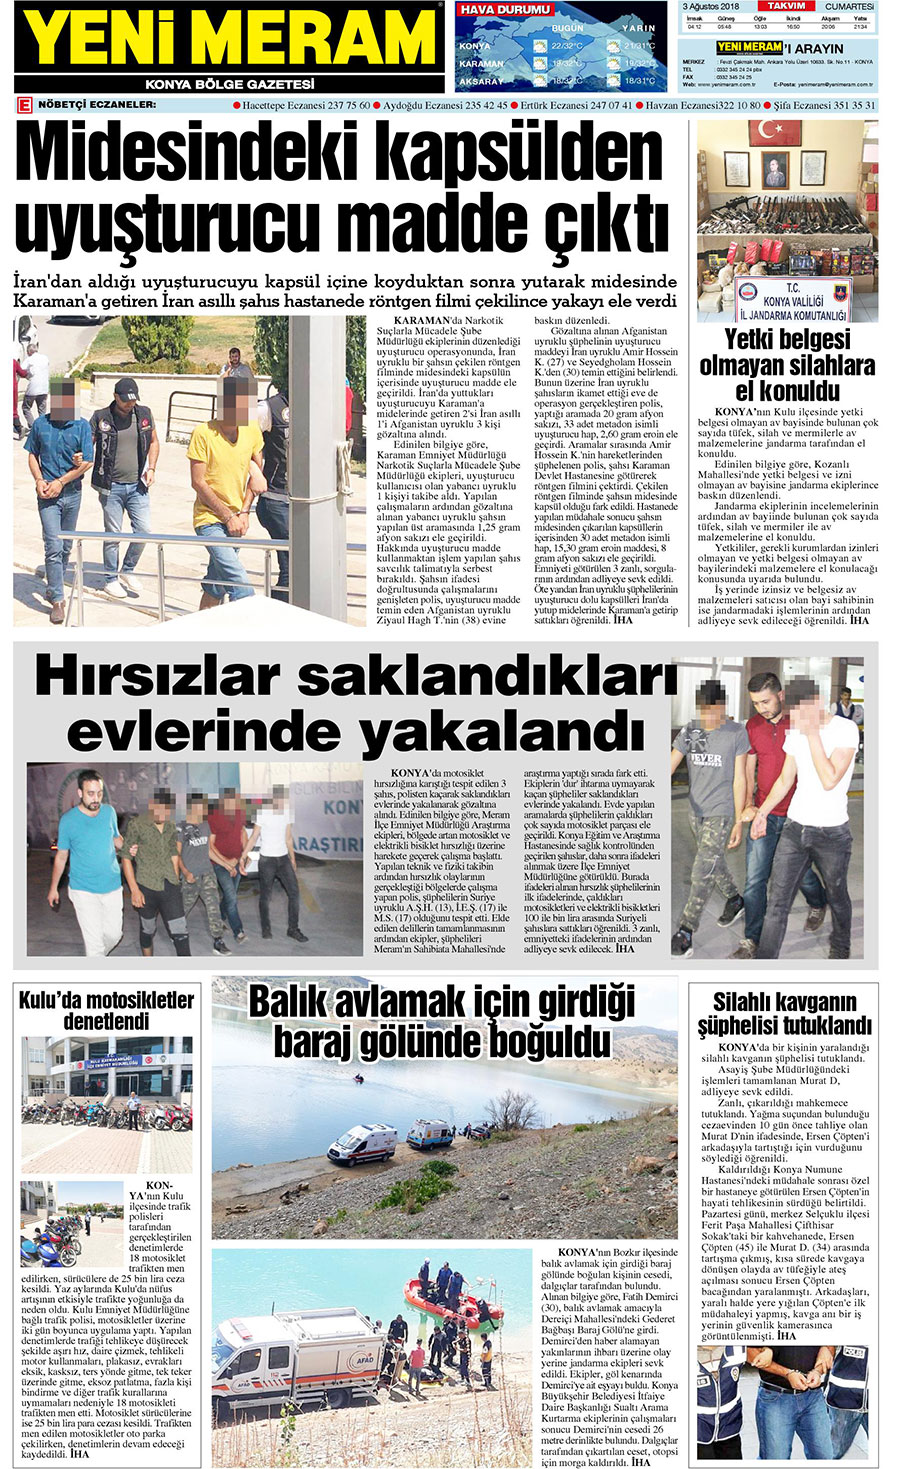 3 Ağustos 2018 Yeni Meram Gazetesi